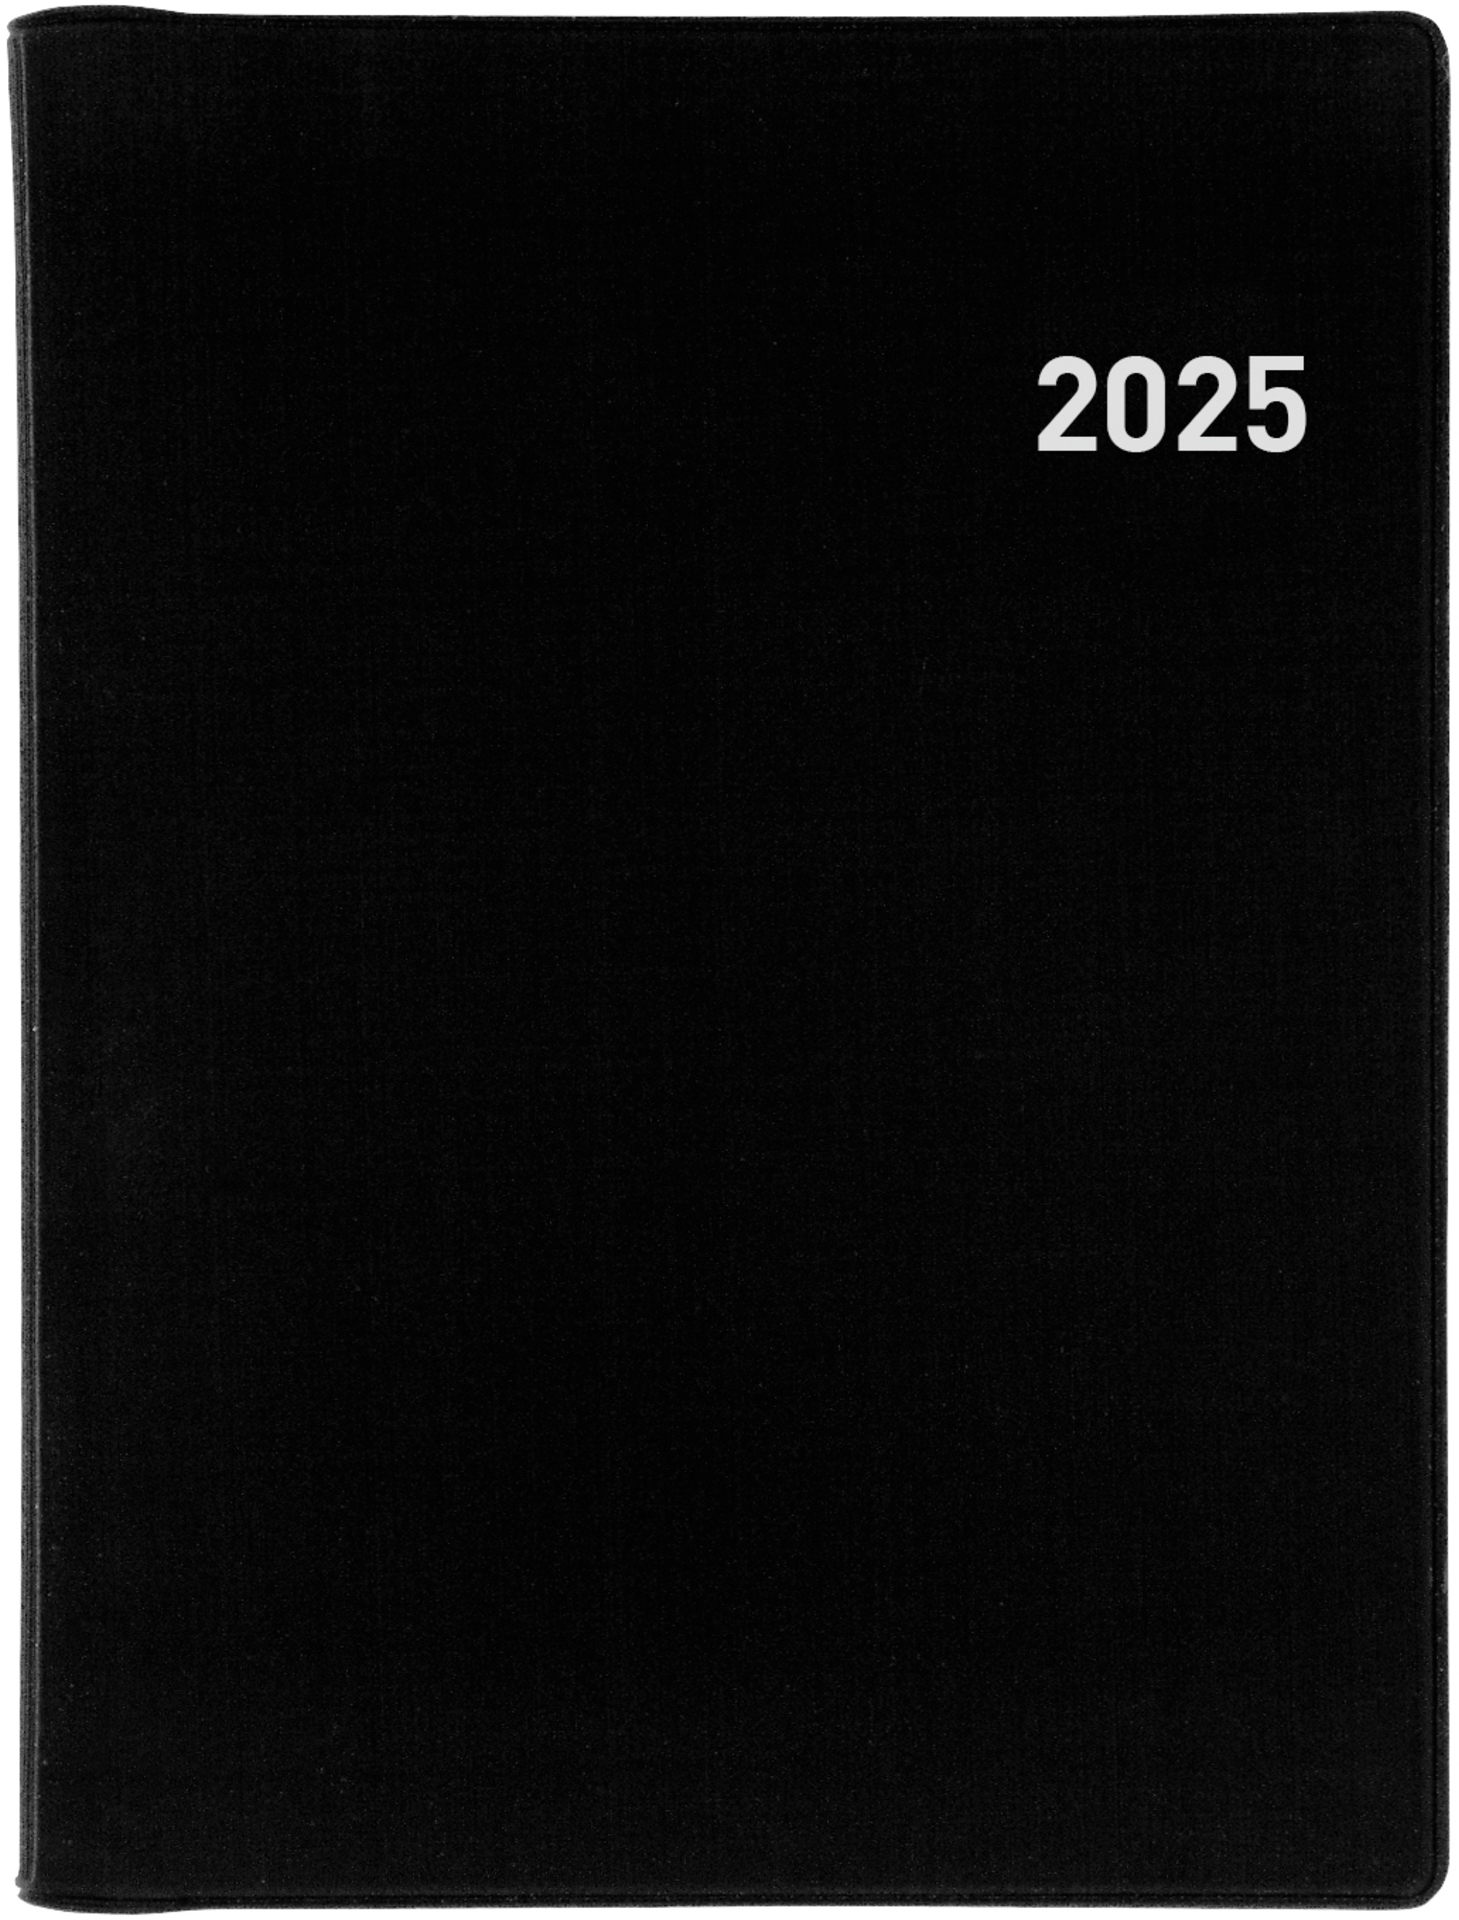 BIELLA Agenda Rex Wire-O 2025 825773020025 1S/2P noir ML 10.1x14.2cm